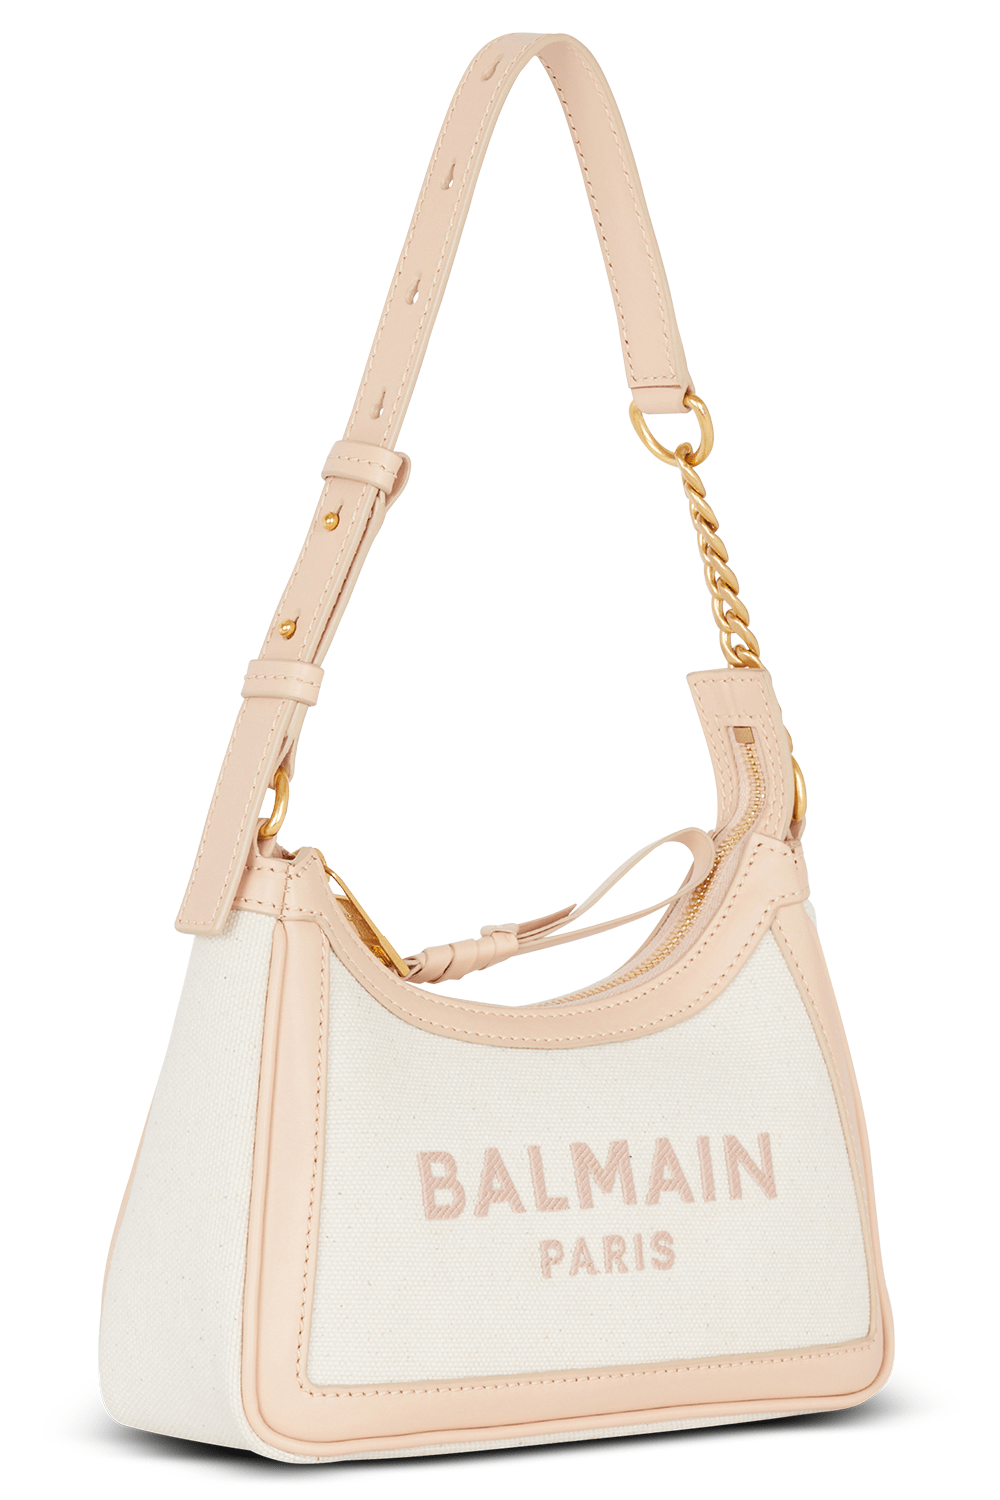 BALMAIN-B-Army Shoulder Bag - Nude Rose-CREAM/NUDE ROSE